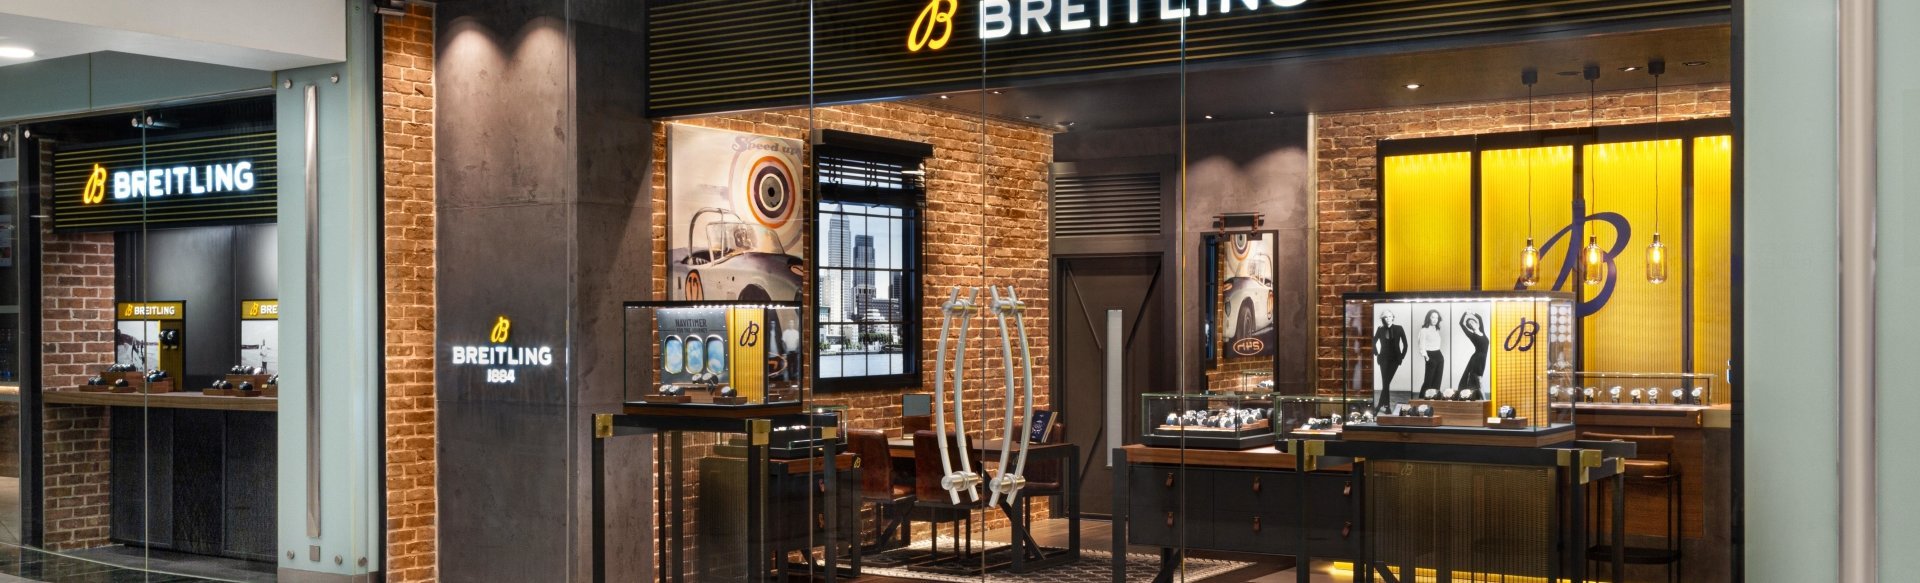 Breitling Boutique Canary Wharf